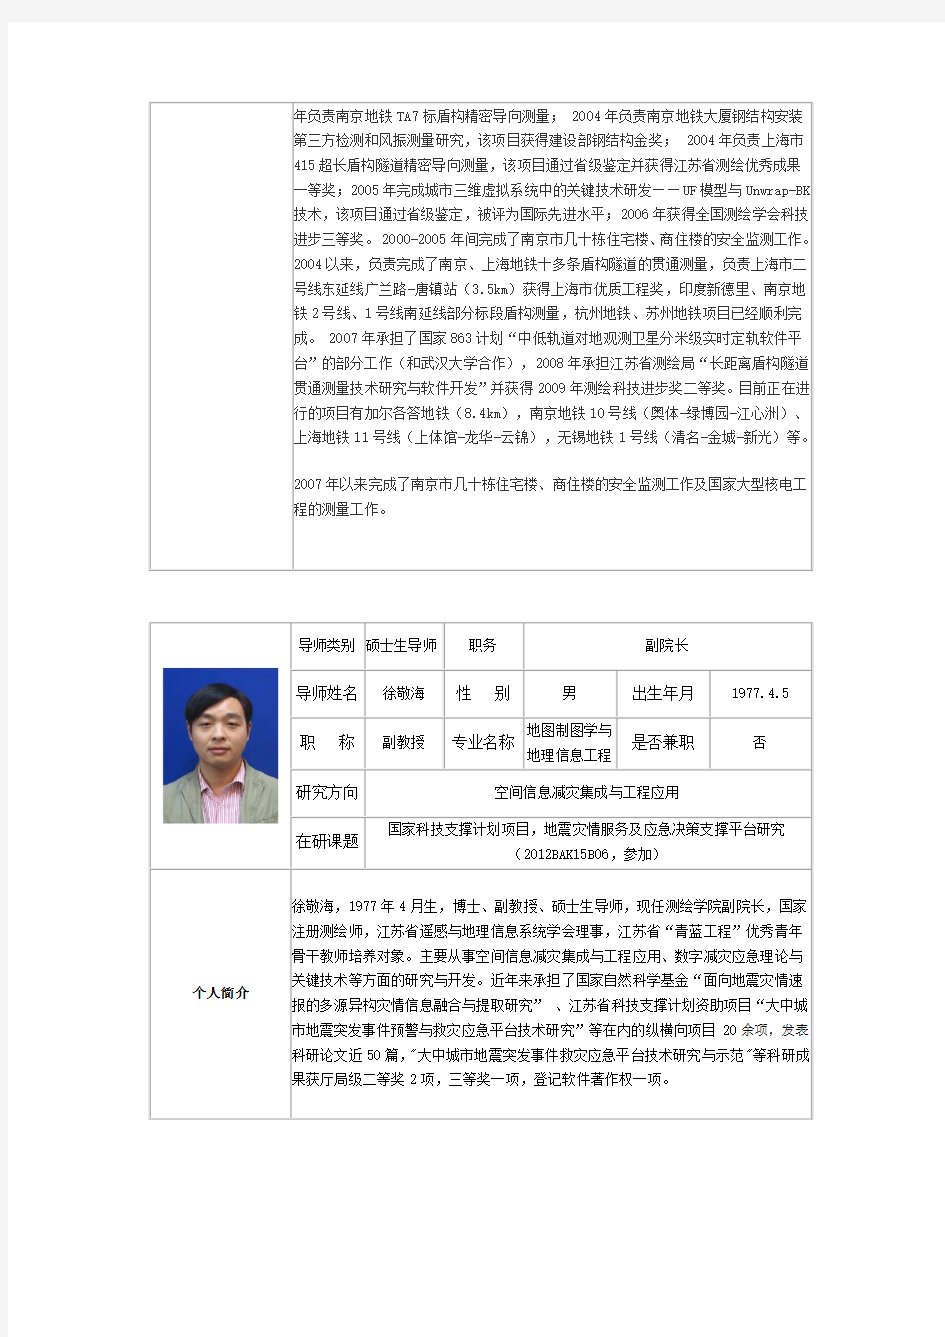 测绘学院研究生导师信息简况表-南京工业大学研究生院